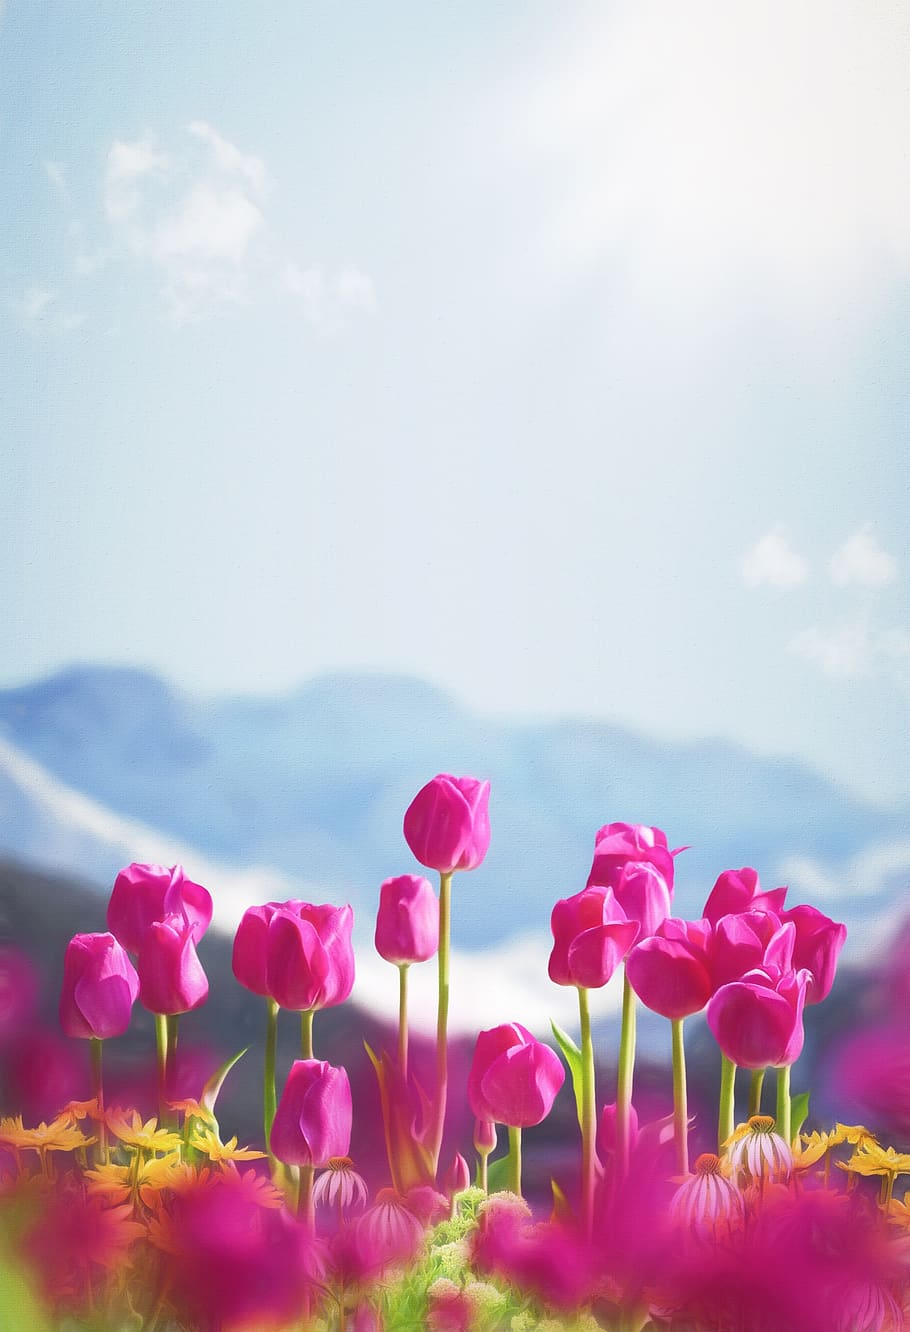 spring, flowers, tulips, phone wallpaper, flower, flowering plant, beauty in nature, plant, freshness, sky